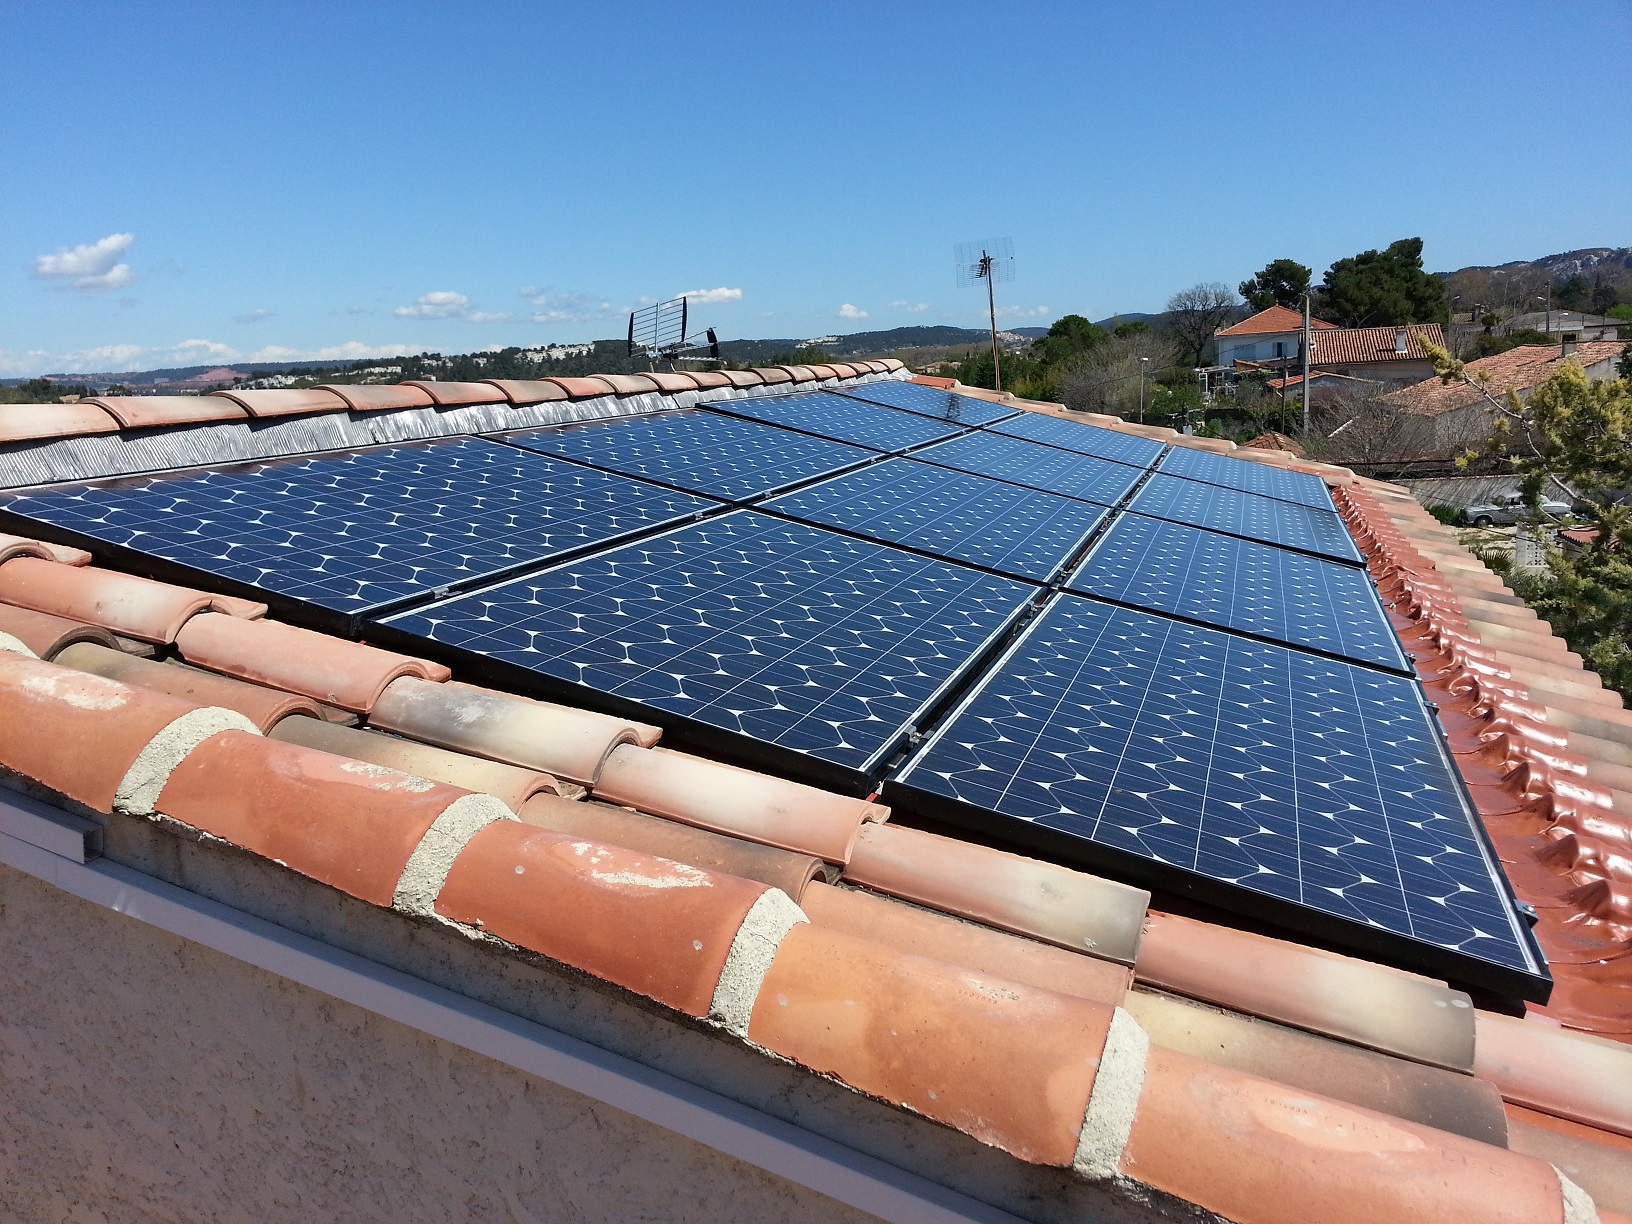 Dépannage toiture solaire photovoltaique, aim solutions energies